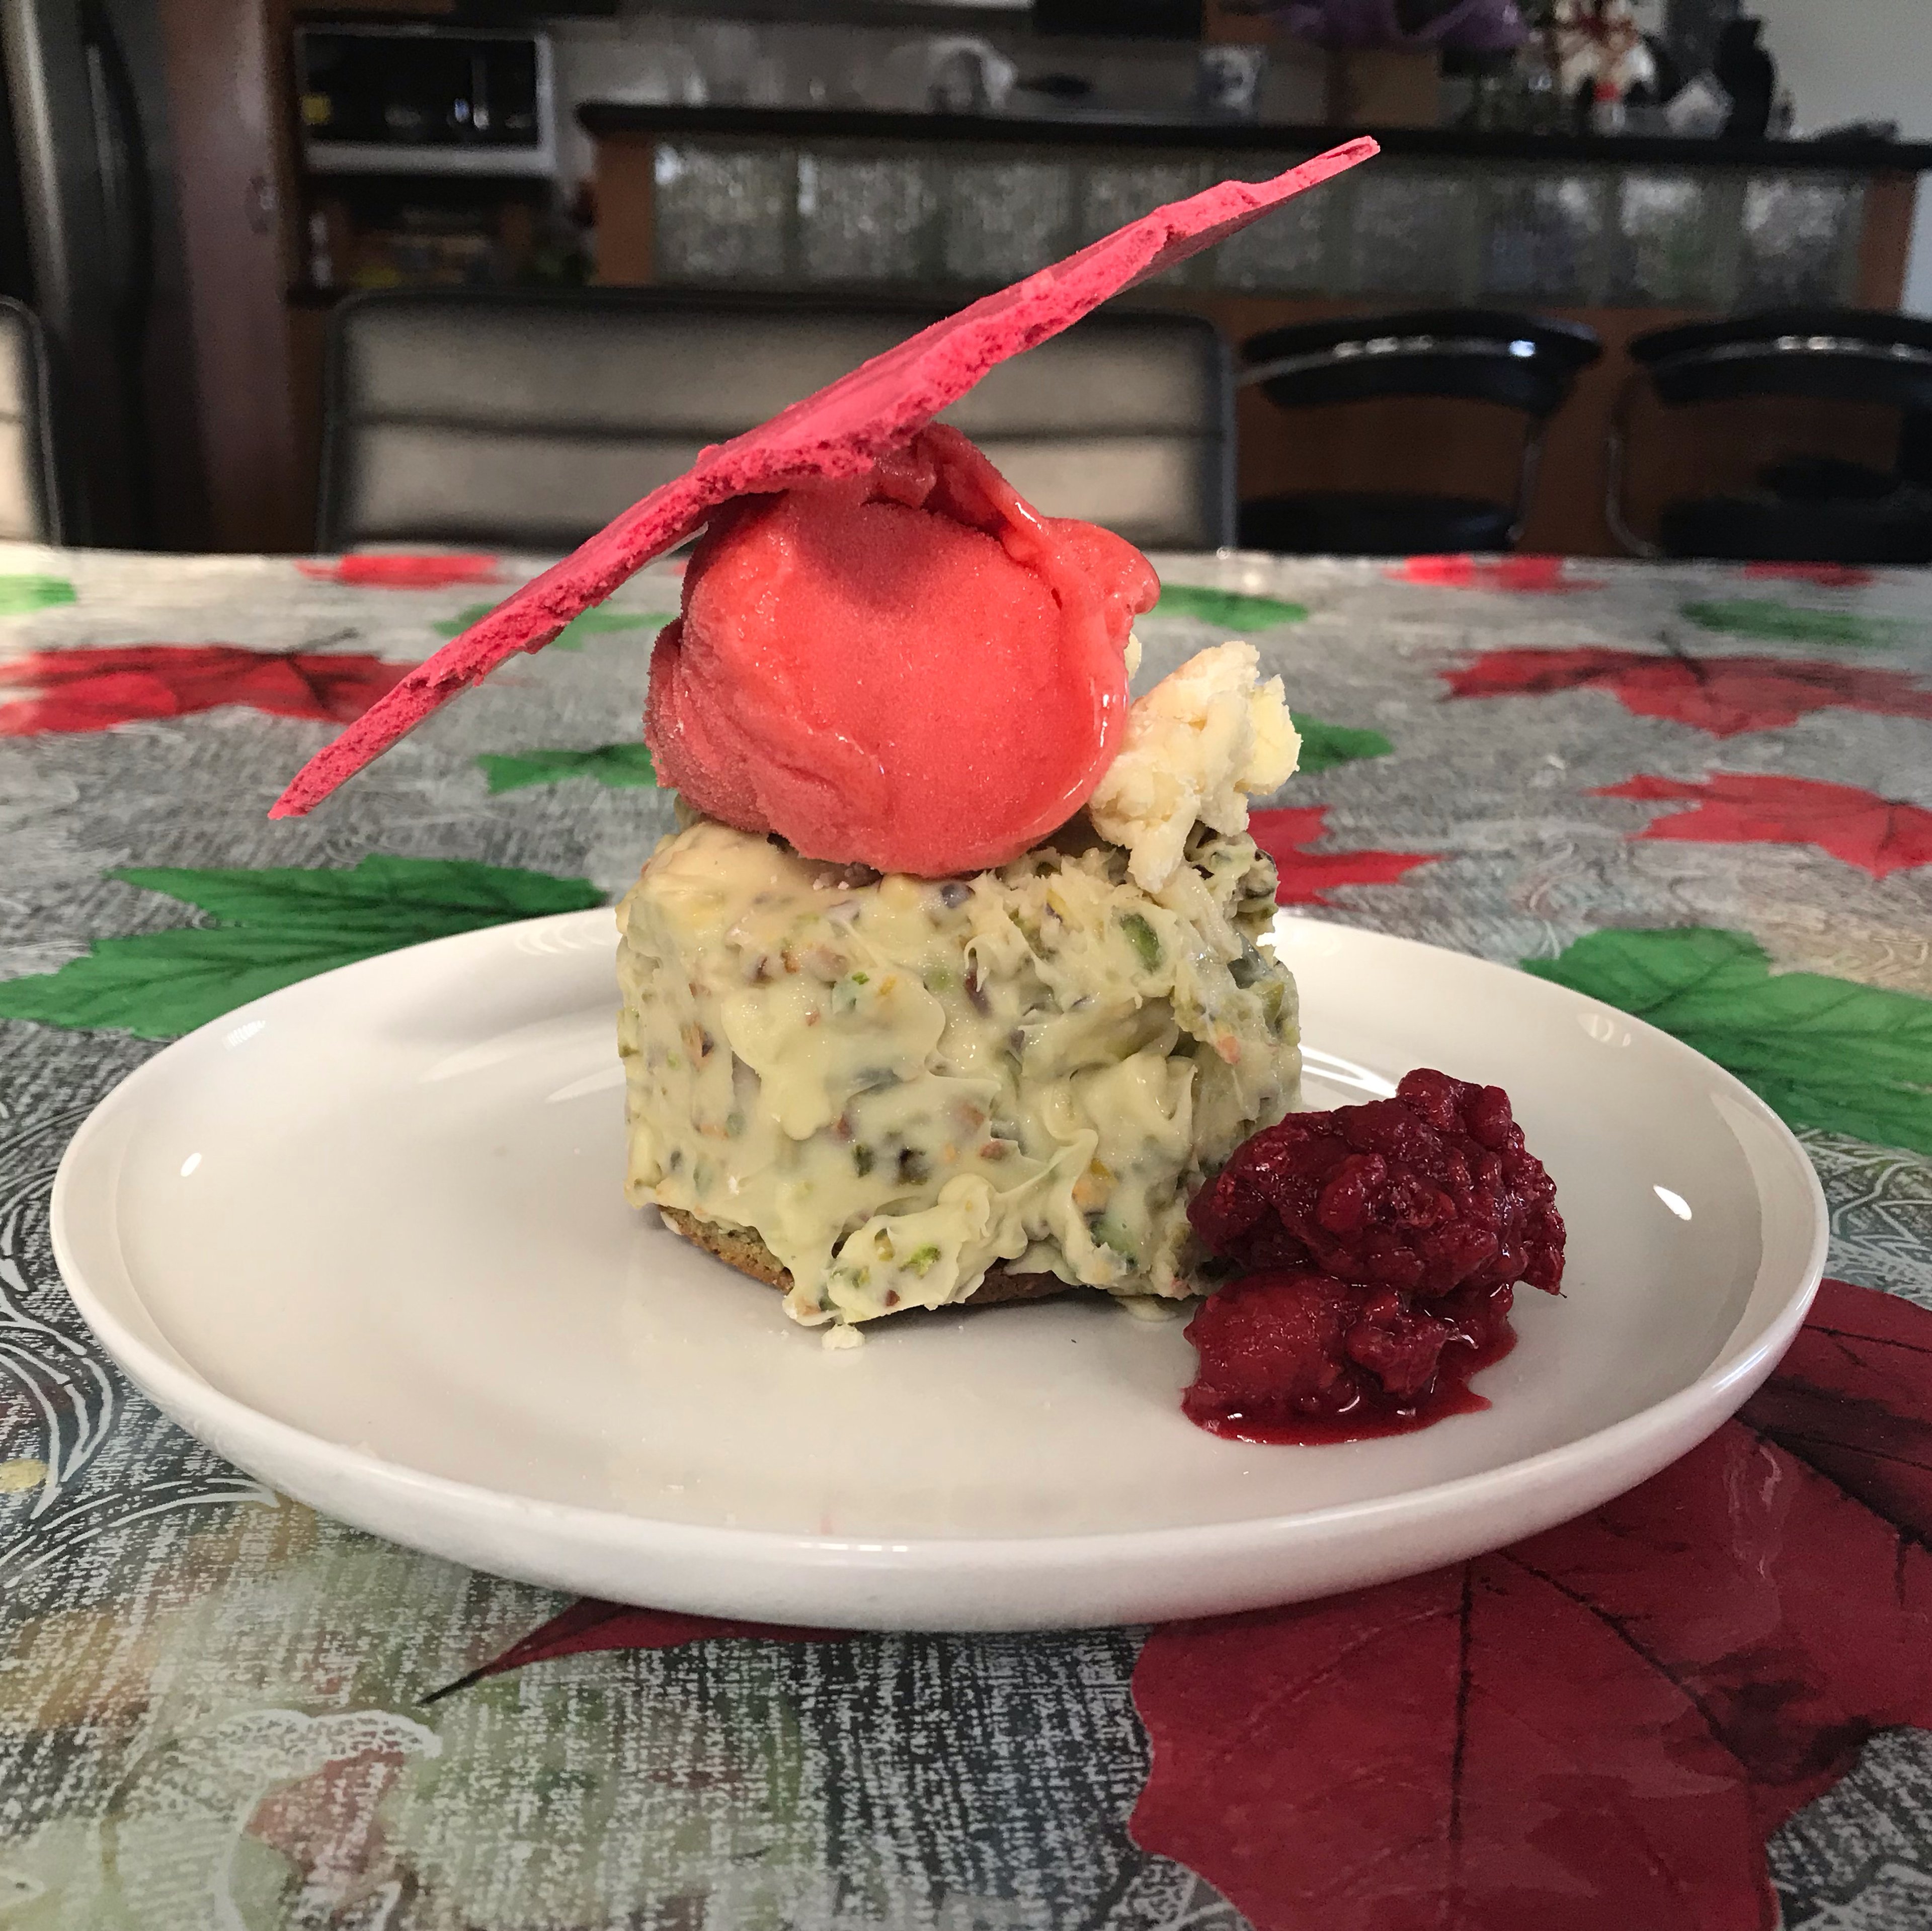 Pistachio financier, mousse and raspberry meringue